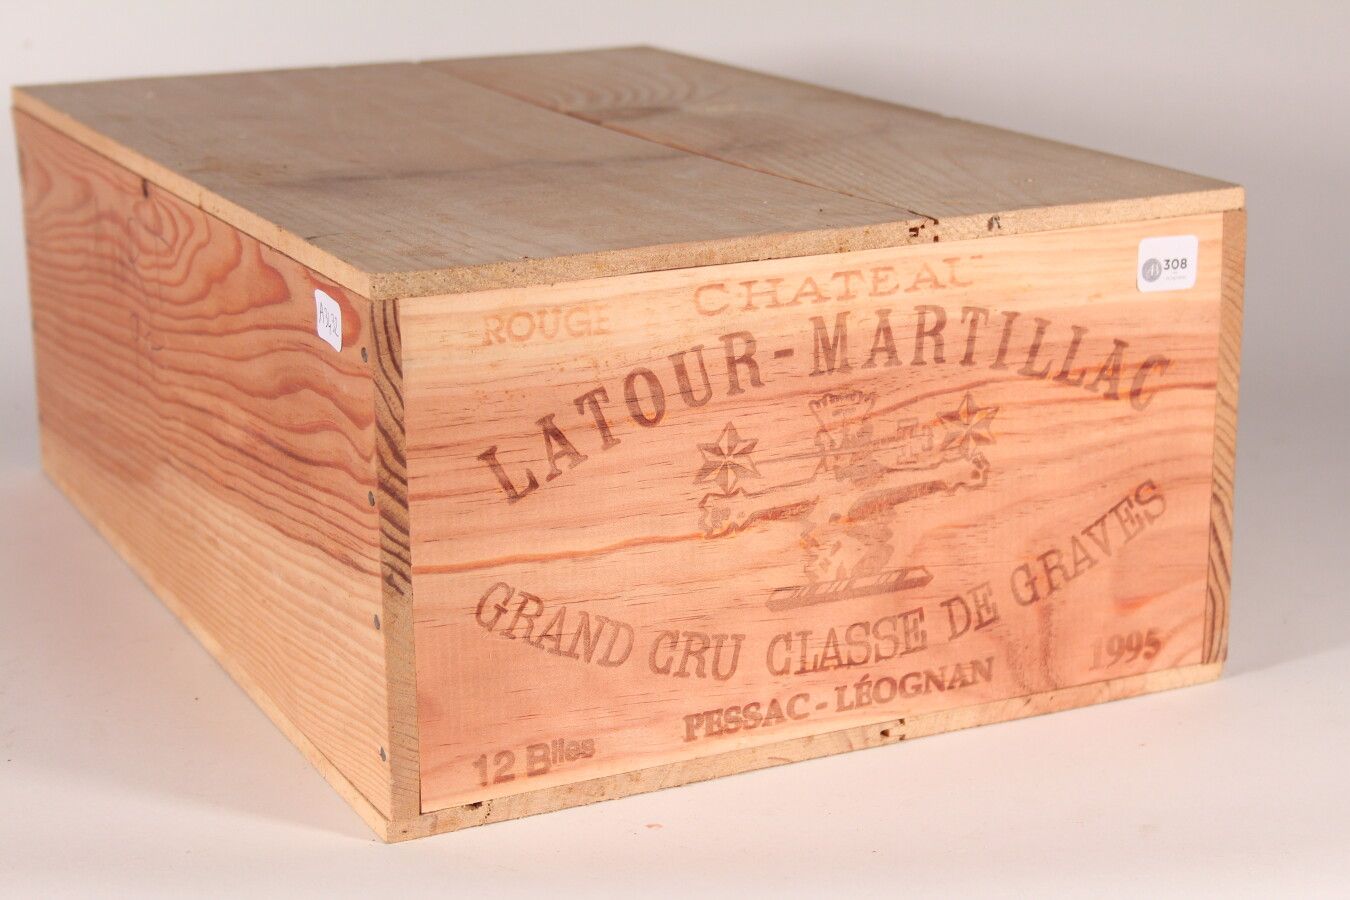 Null 1995 - Château Latour Martillac

Pessac-Léognan - 12 Flaschen